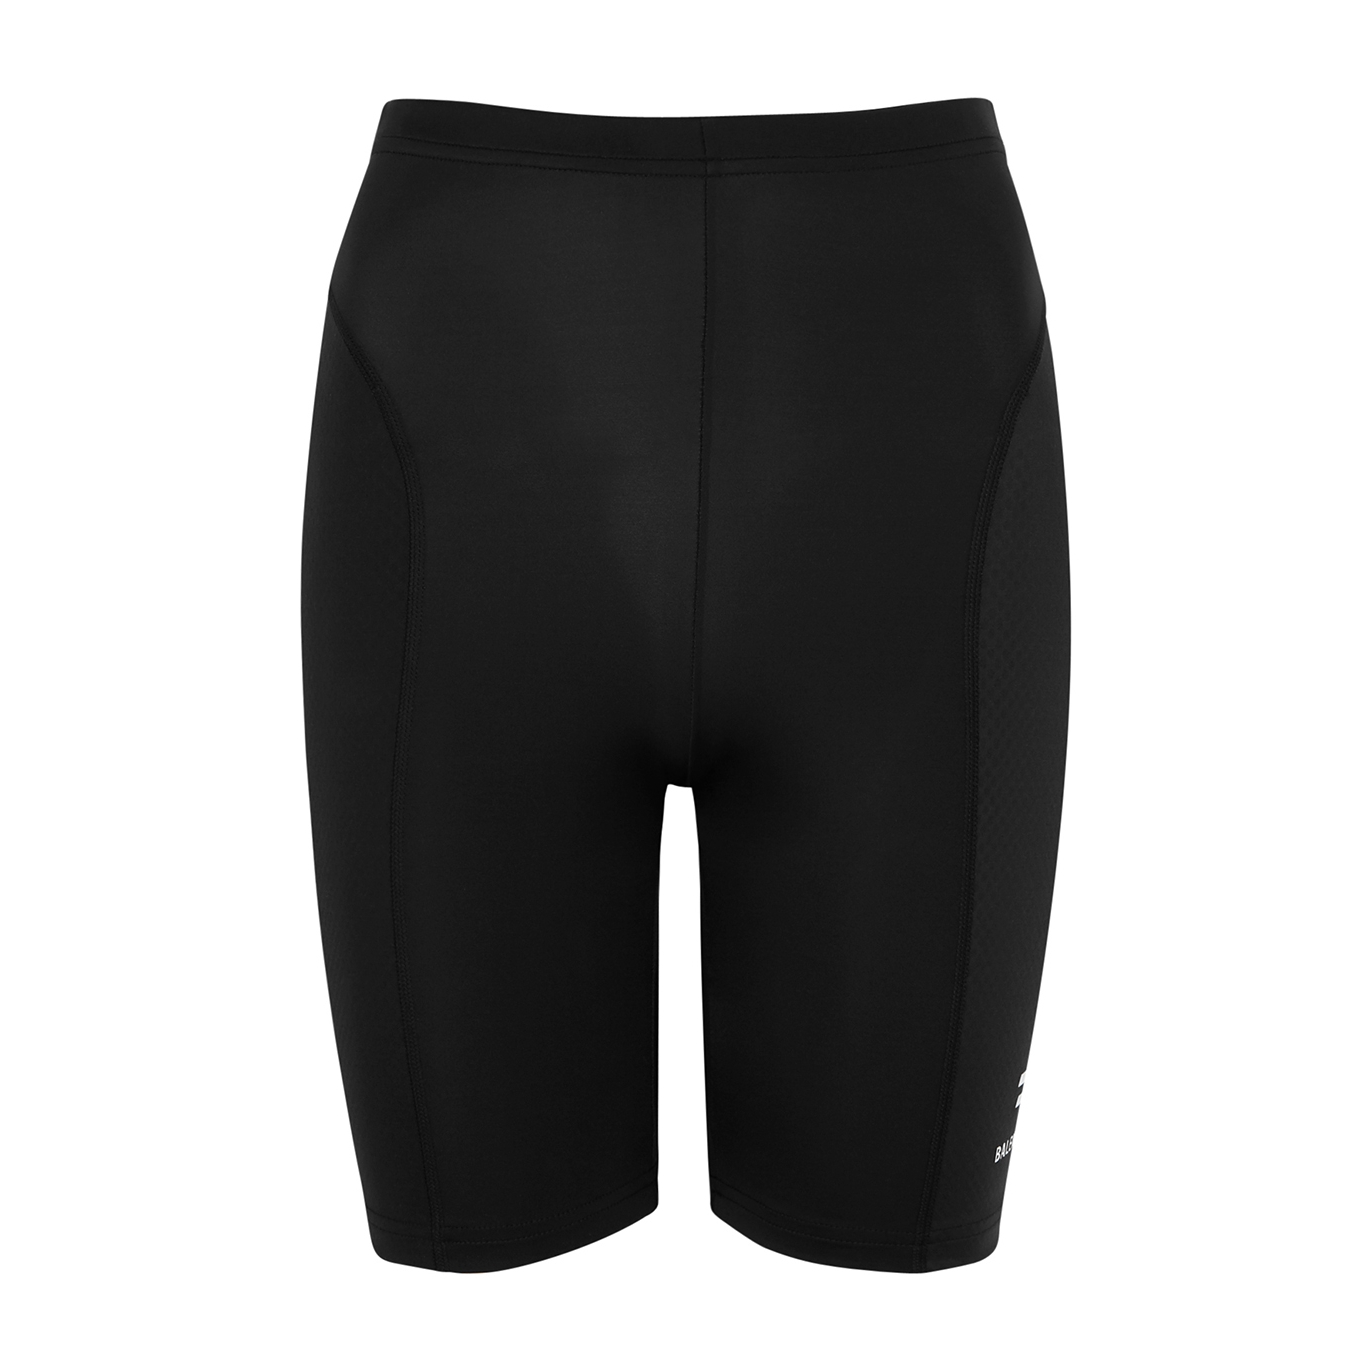 Balenciaga Black Panelled Cycling Shorts - Black And White - M